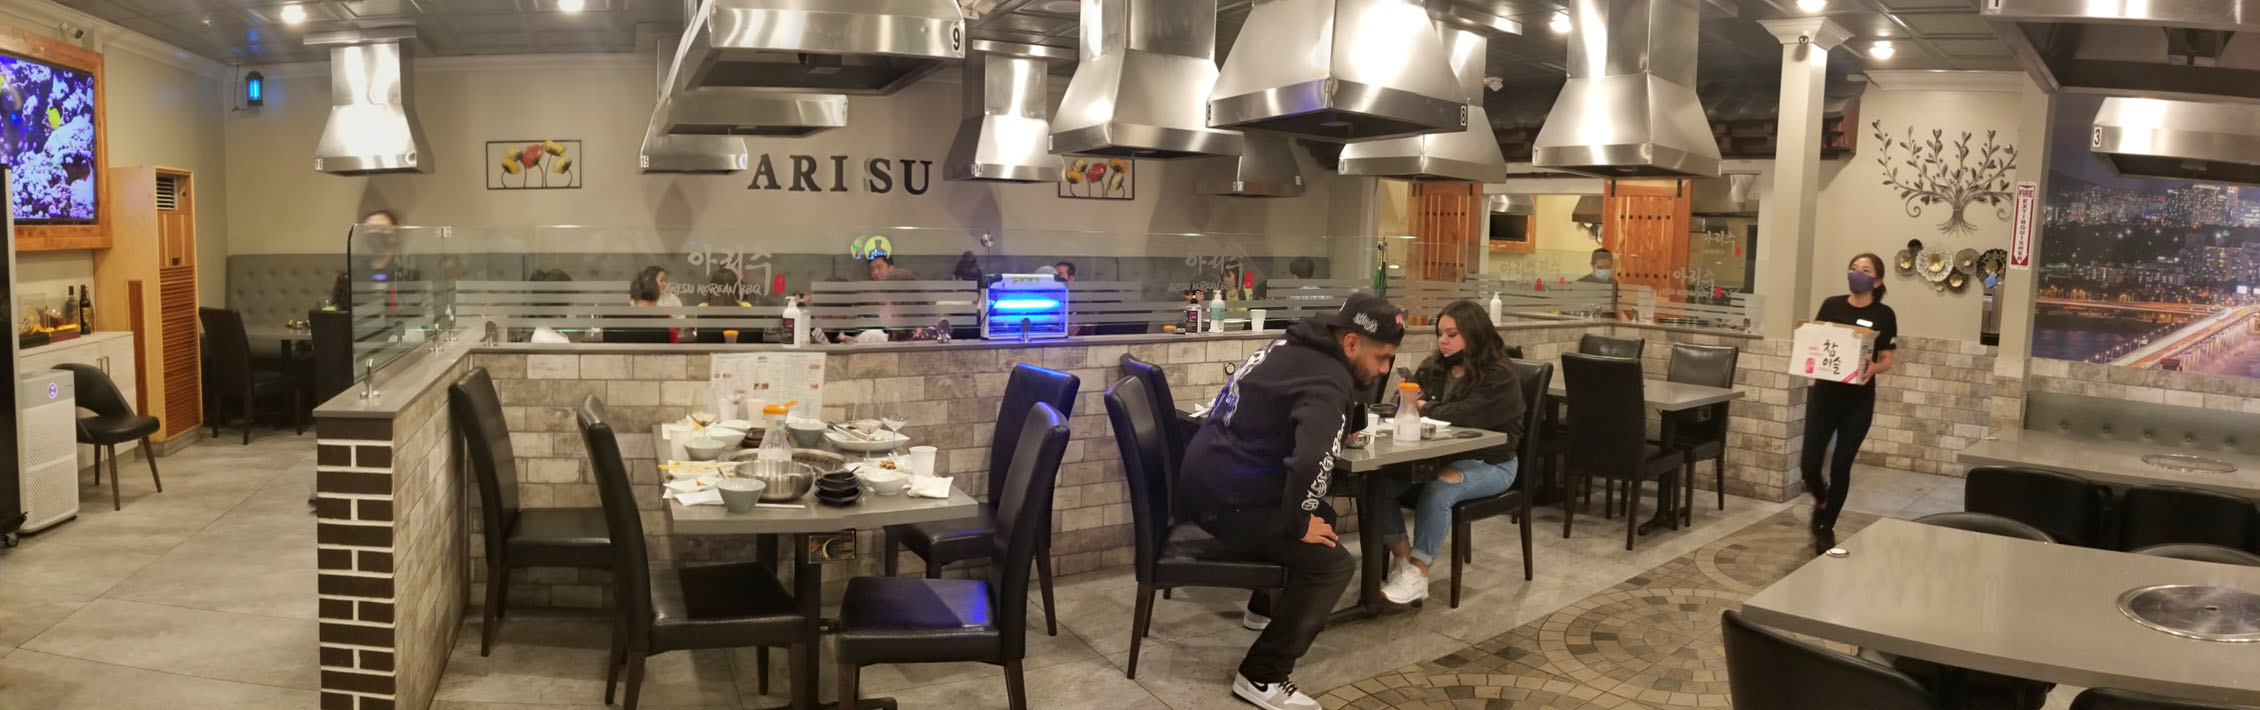 Arisu Korean BBQ Interior